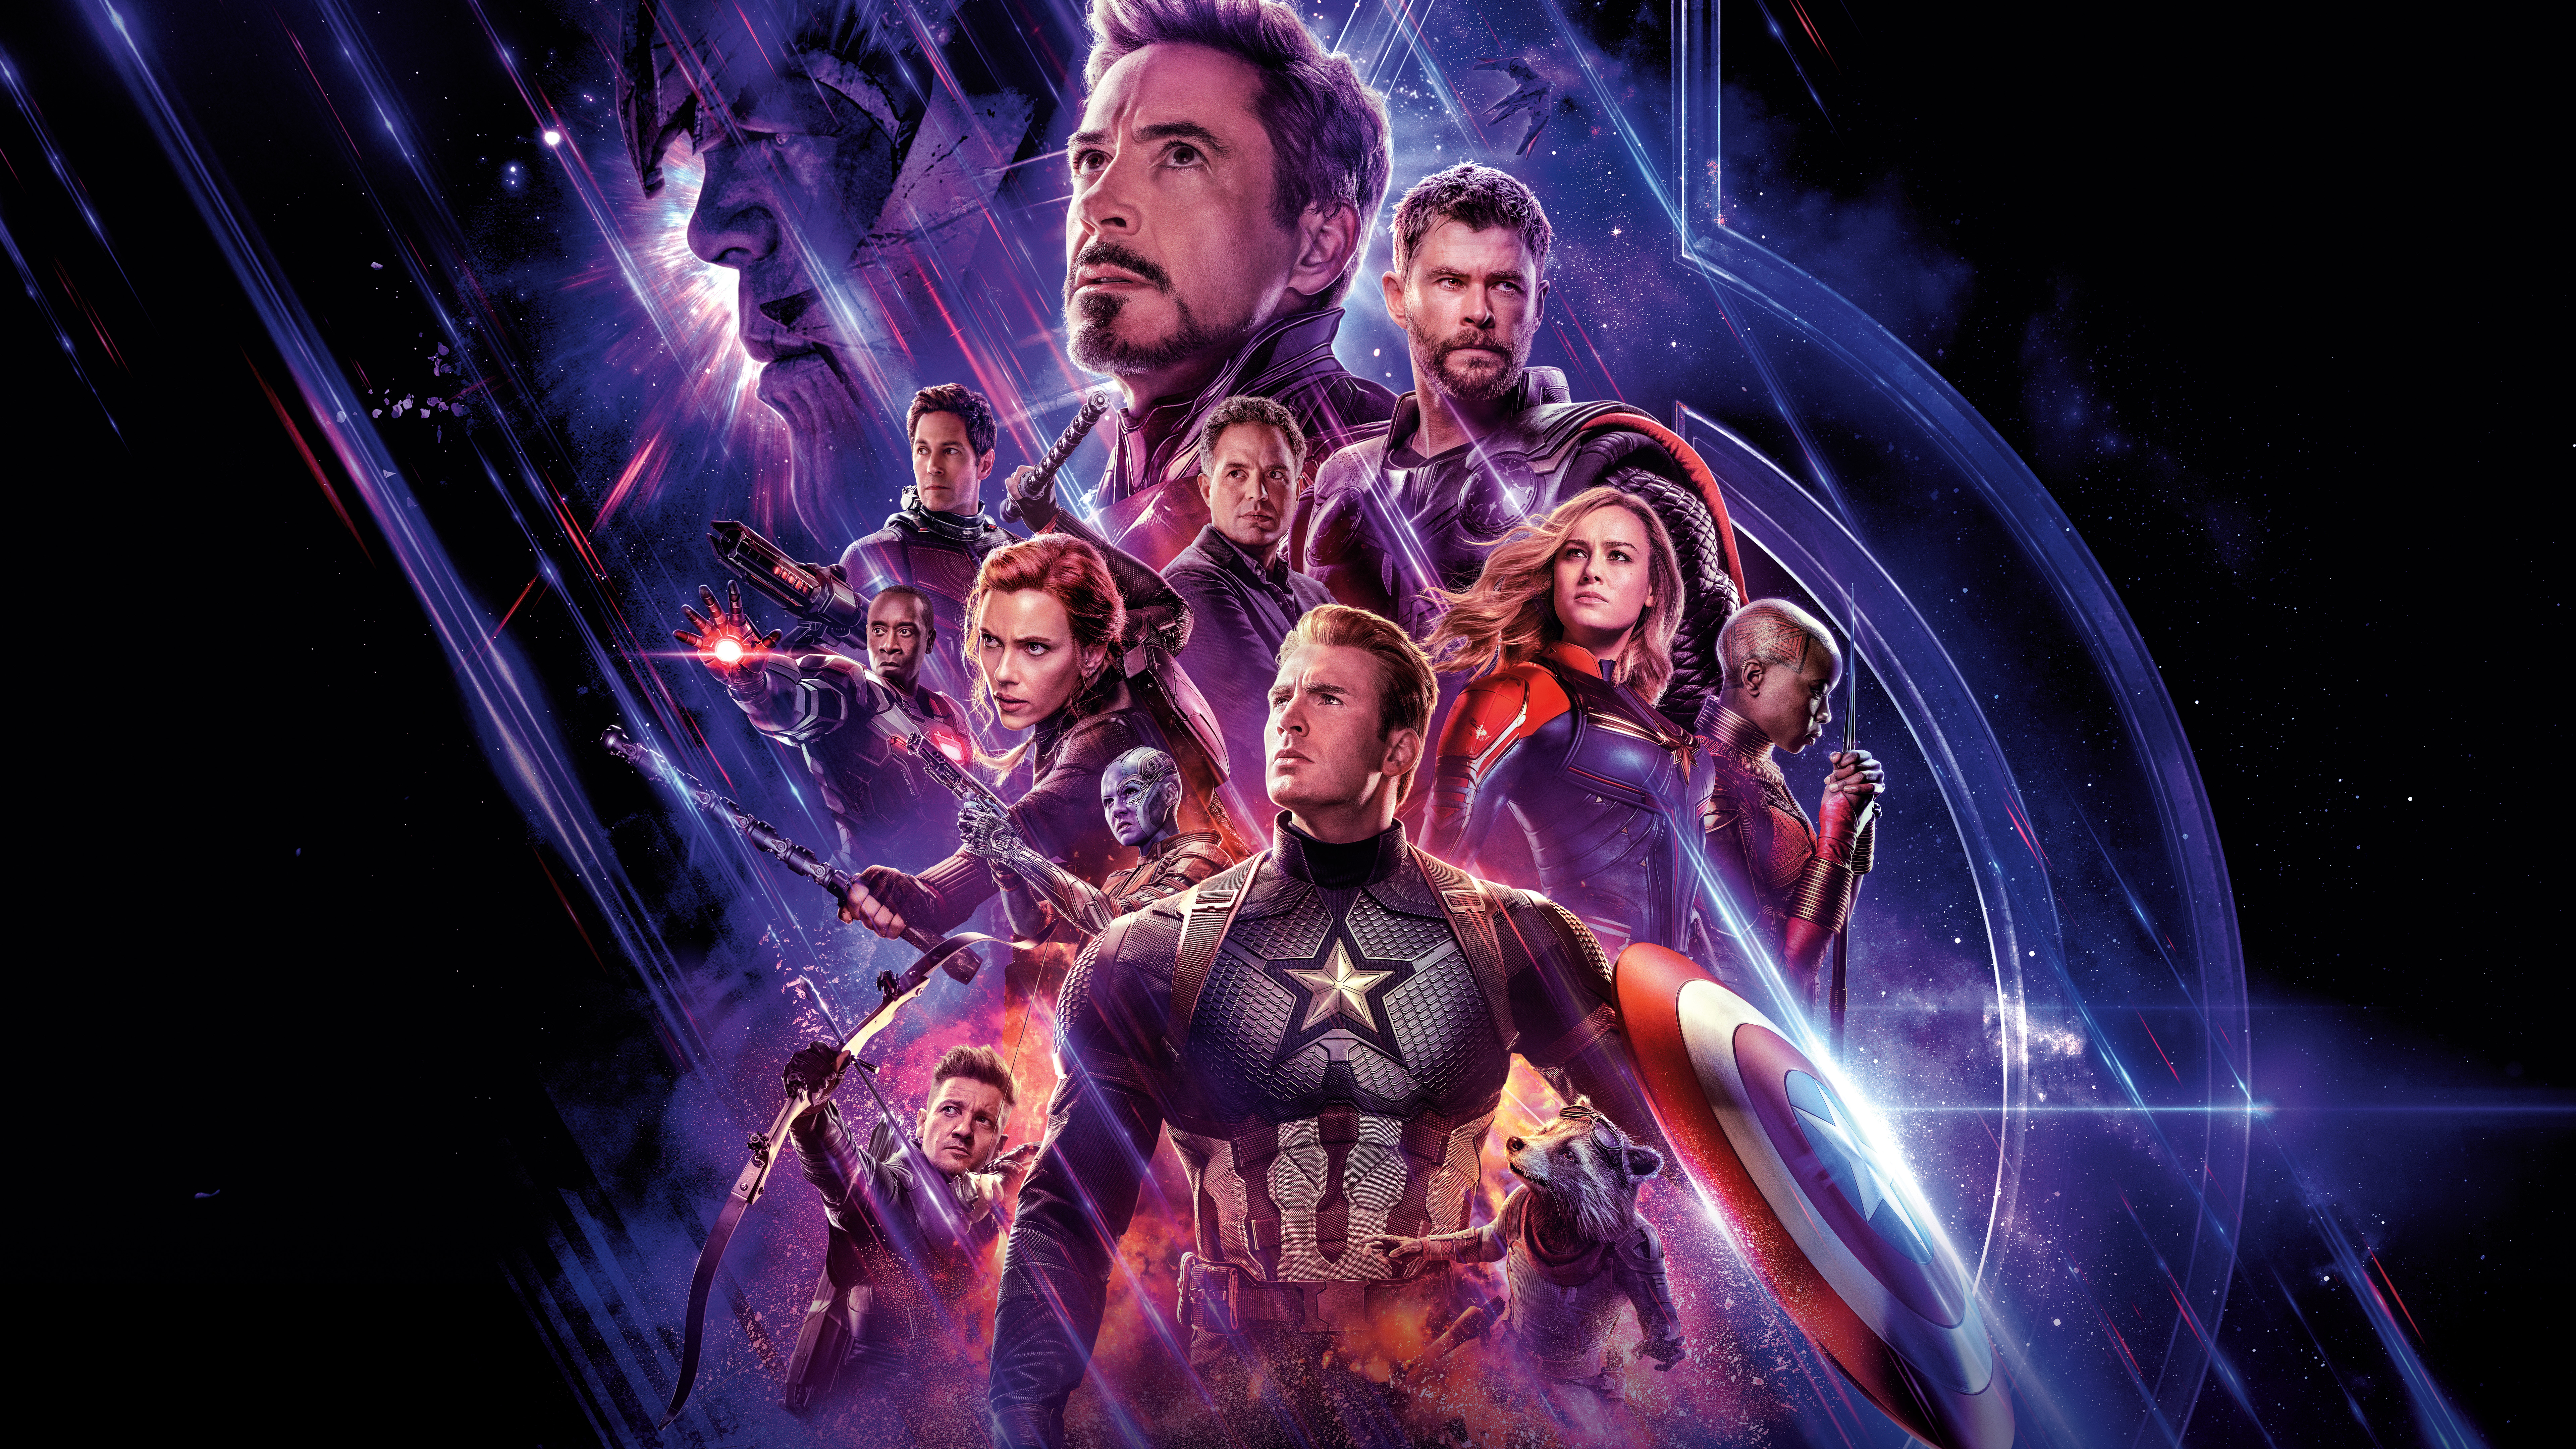 Avengers Endgame 2019 4K 8K Wallpapers